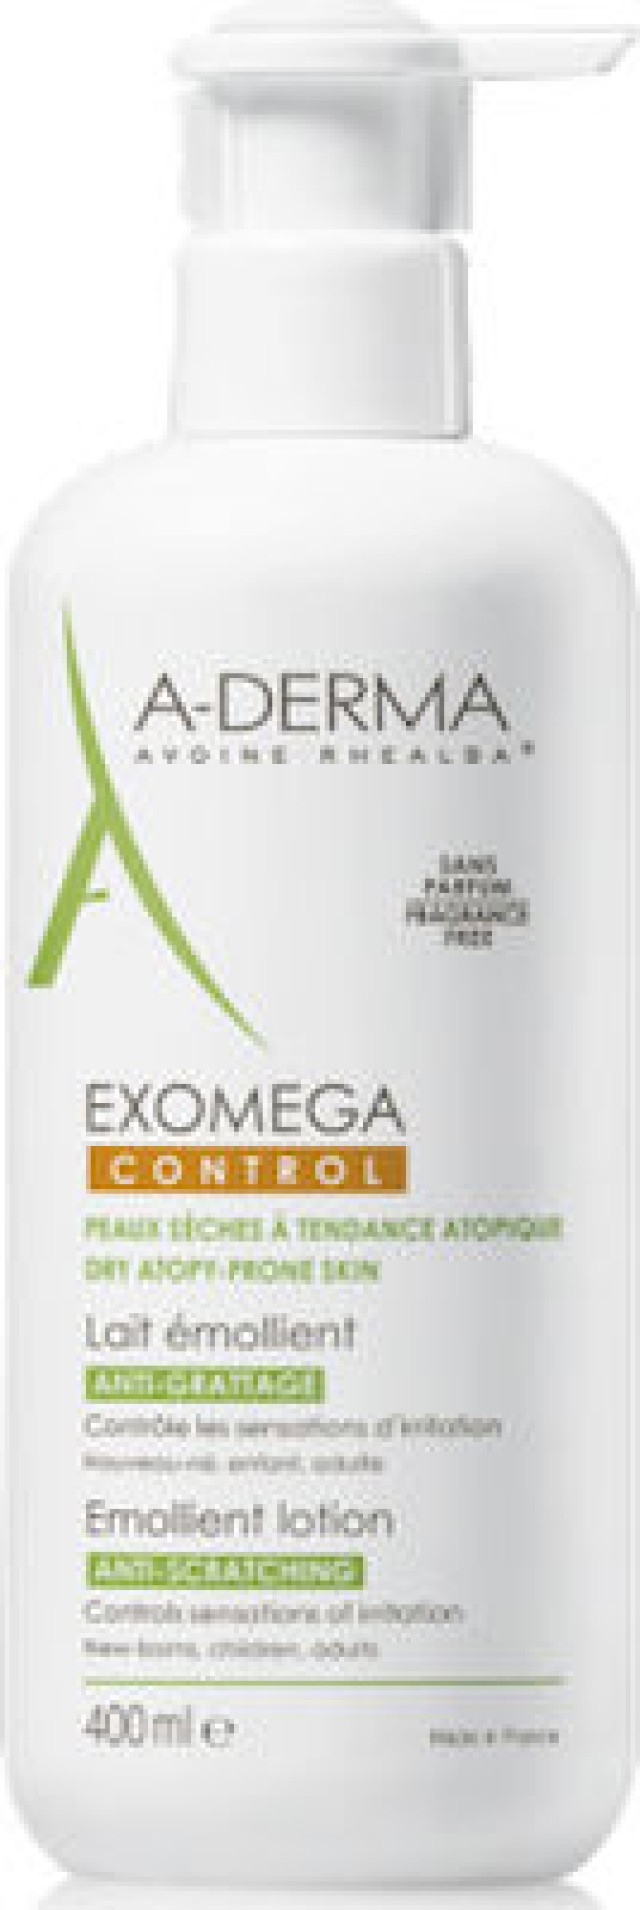 A-Derma Exomega Control Μαλακτικό Γαλάκτωμα κατά του Αισθήματος Κνησμού, 400ml